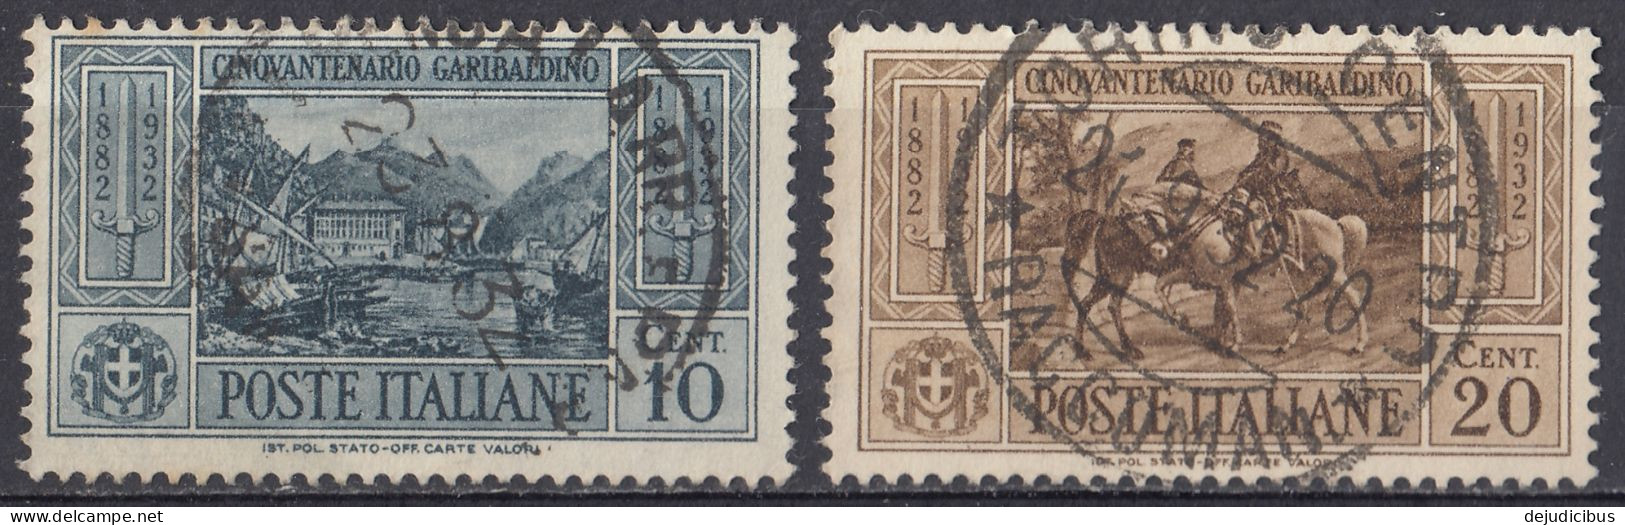 ITALIA - 1932 - Lotto Di 2 Valori Usati:  Yvert 295 E 296. - Paquetes Postales